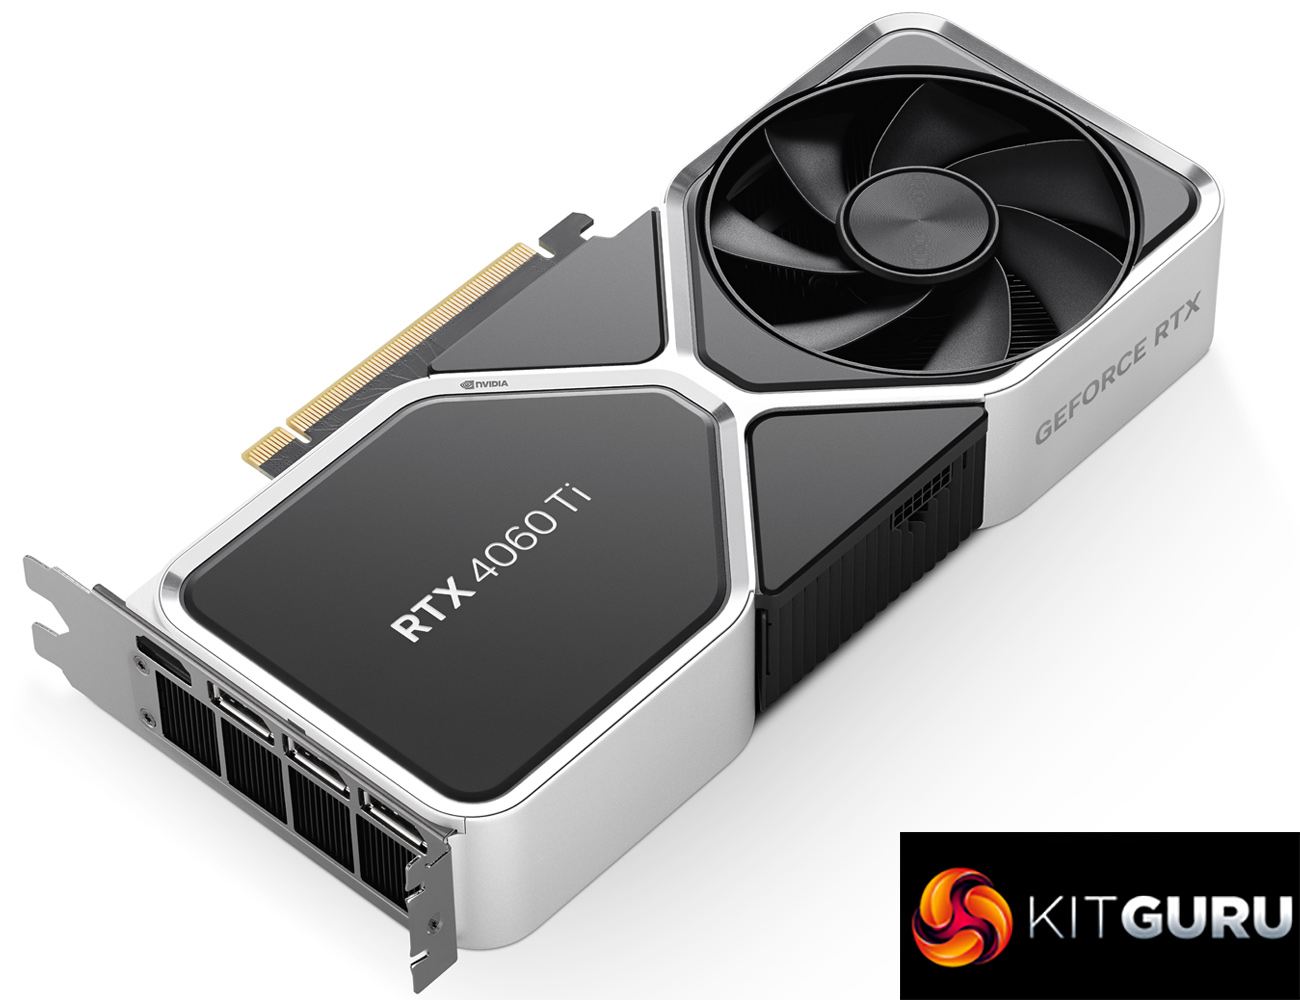 Nvidia AIBs present the first mini-ITX RTX 4060 GPUs